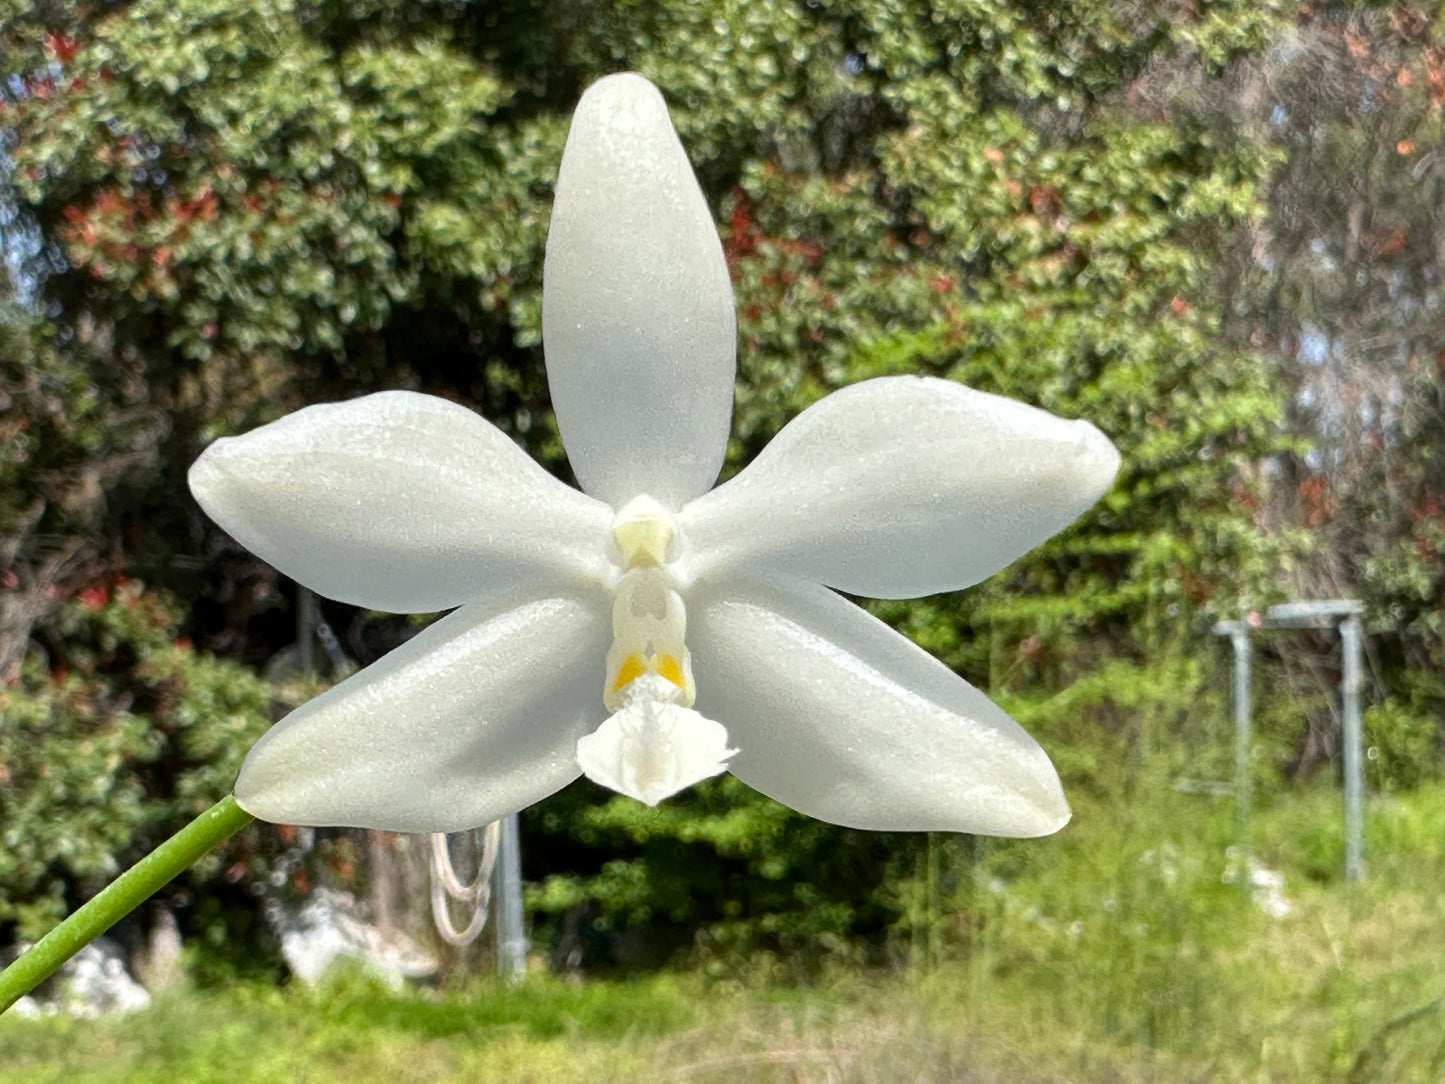 Phalaenopsis lueddemanniana fma alba 'Max-Snow Lover' Keiki mature size